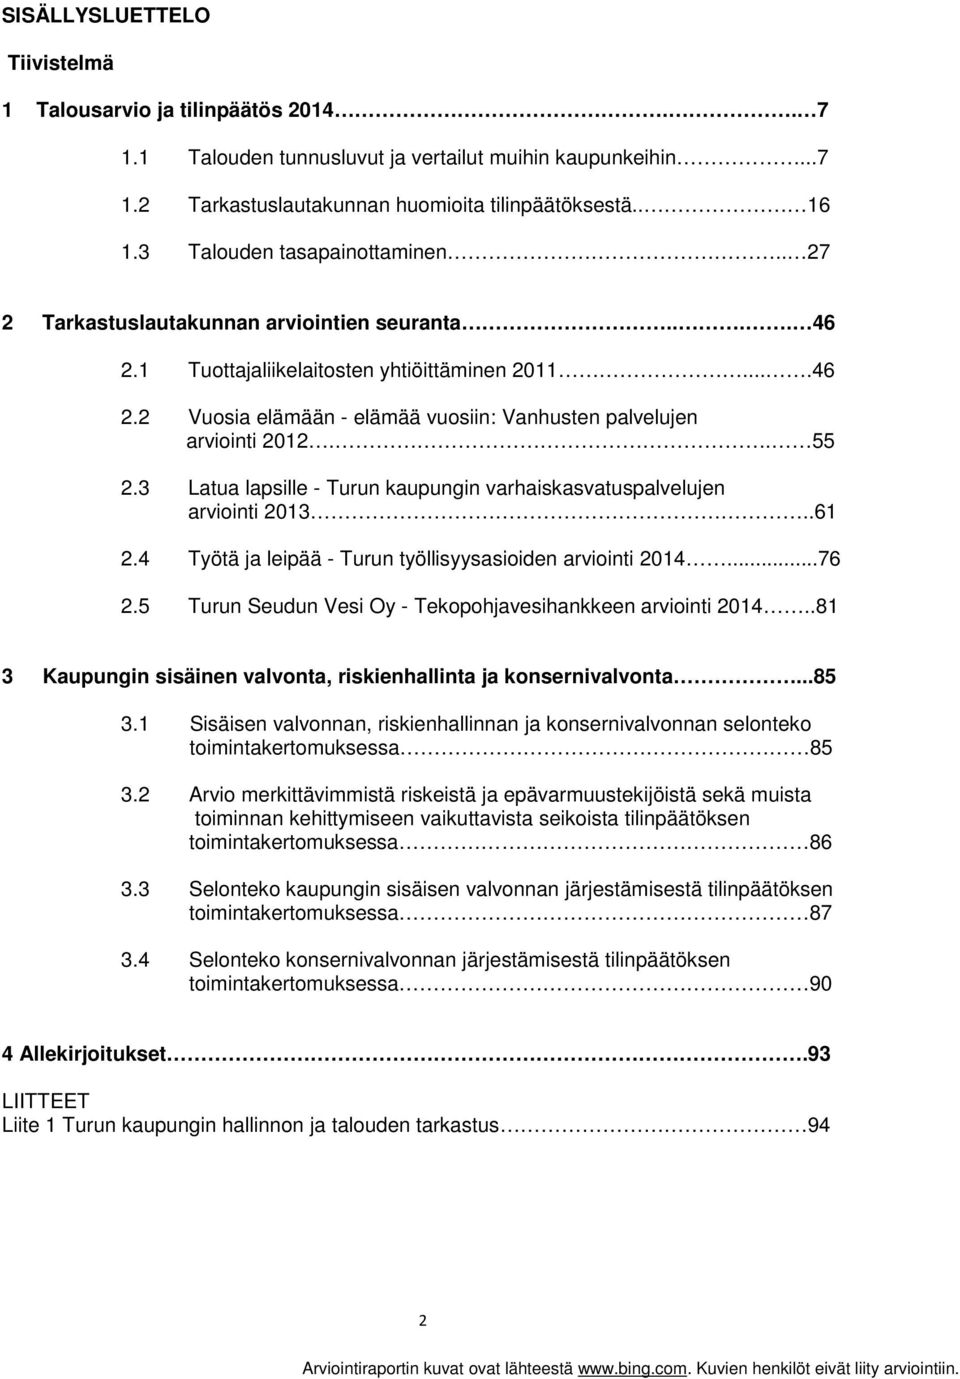 . 55 2.3 Latua lapsille - Turun kaupungin varhaiskasvatuspalvelujen arviointi 2013..61 2.4 Työtä ja leipää - Turun työllisyysasioiden arviointi 2014...76 2.